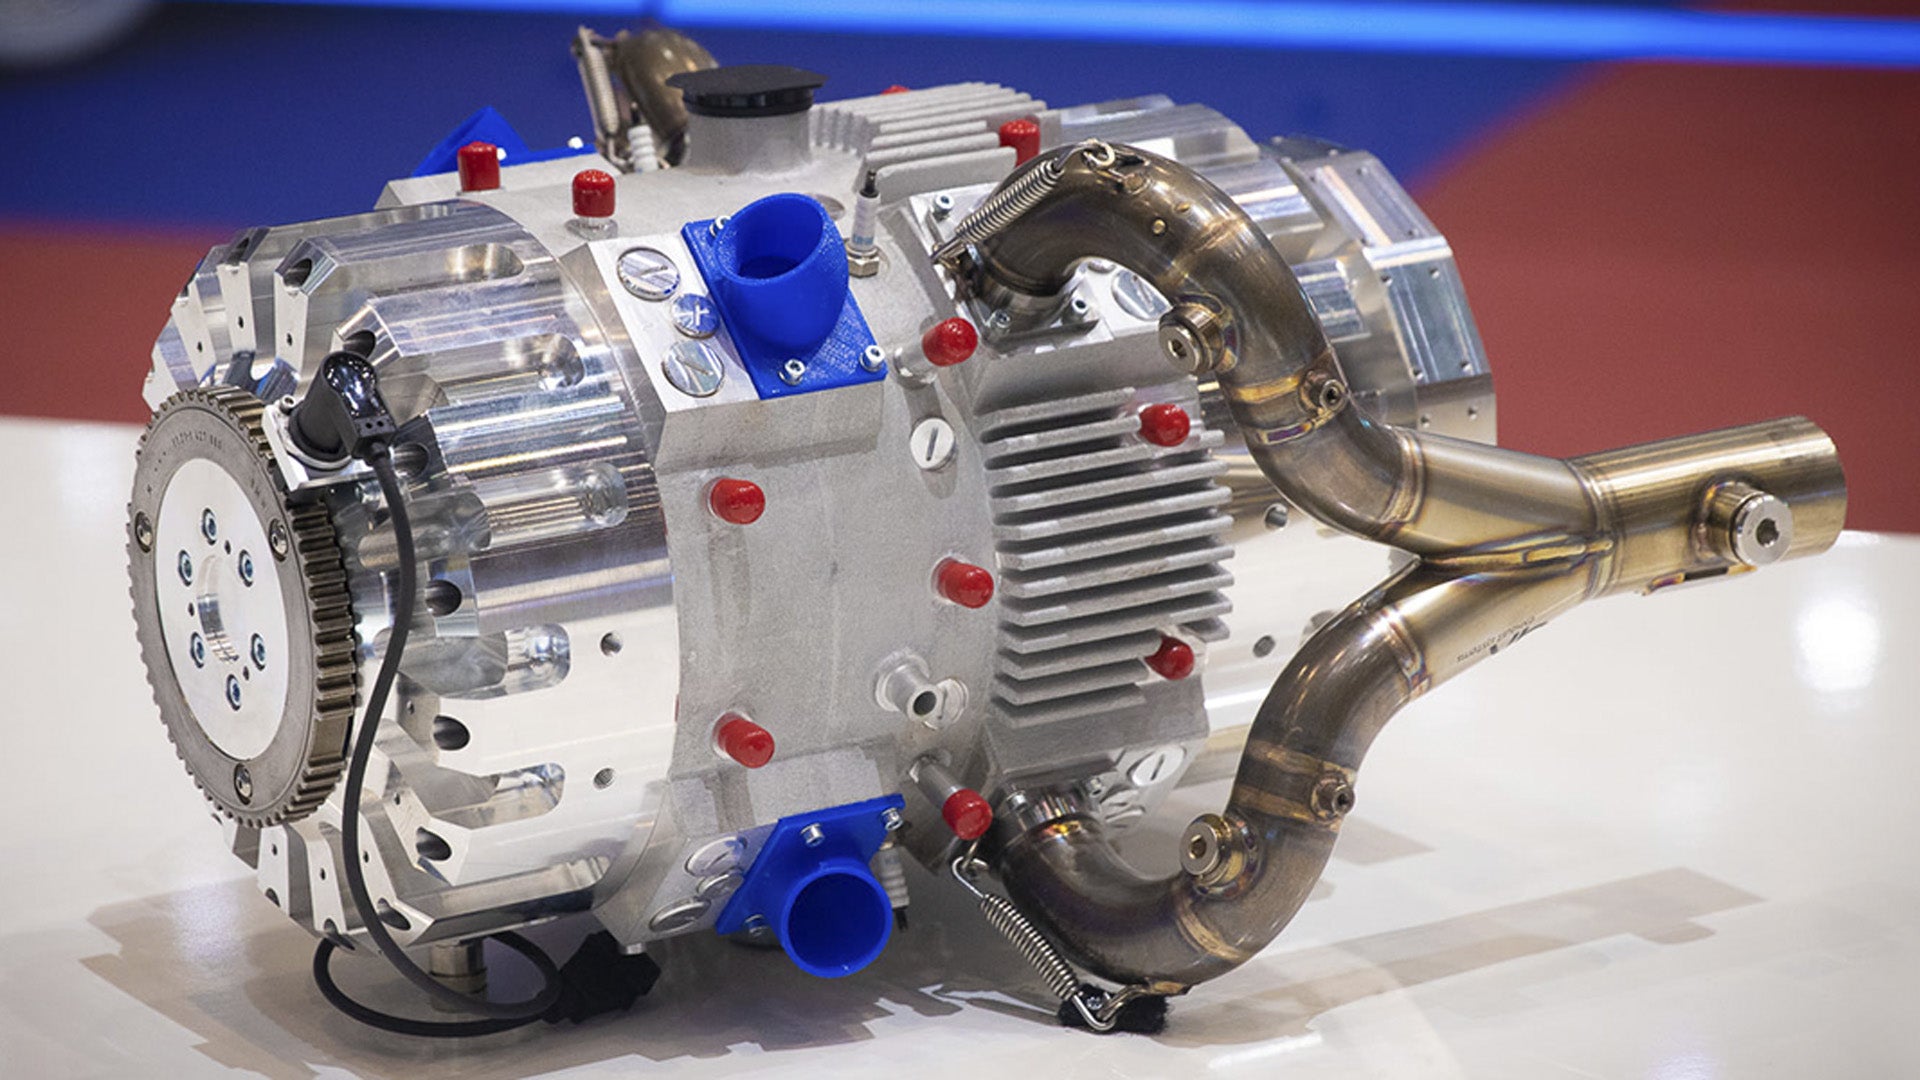 A empresa constrói um poderoso motor “one-stroke” de 500 cc e o instala prontamente no Miata